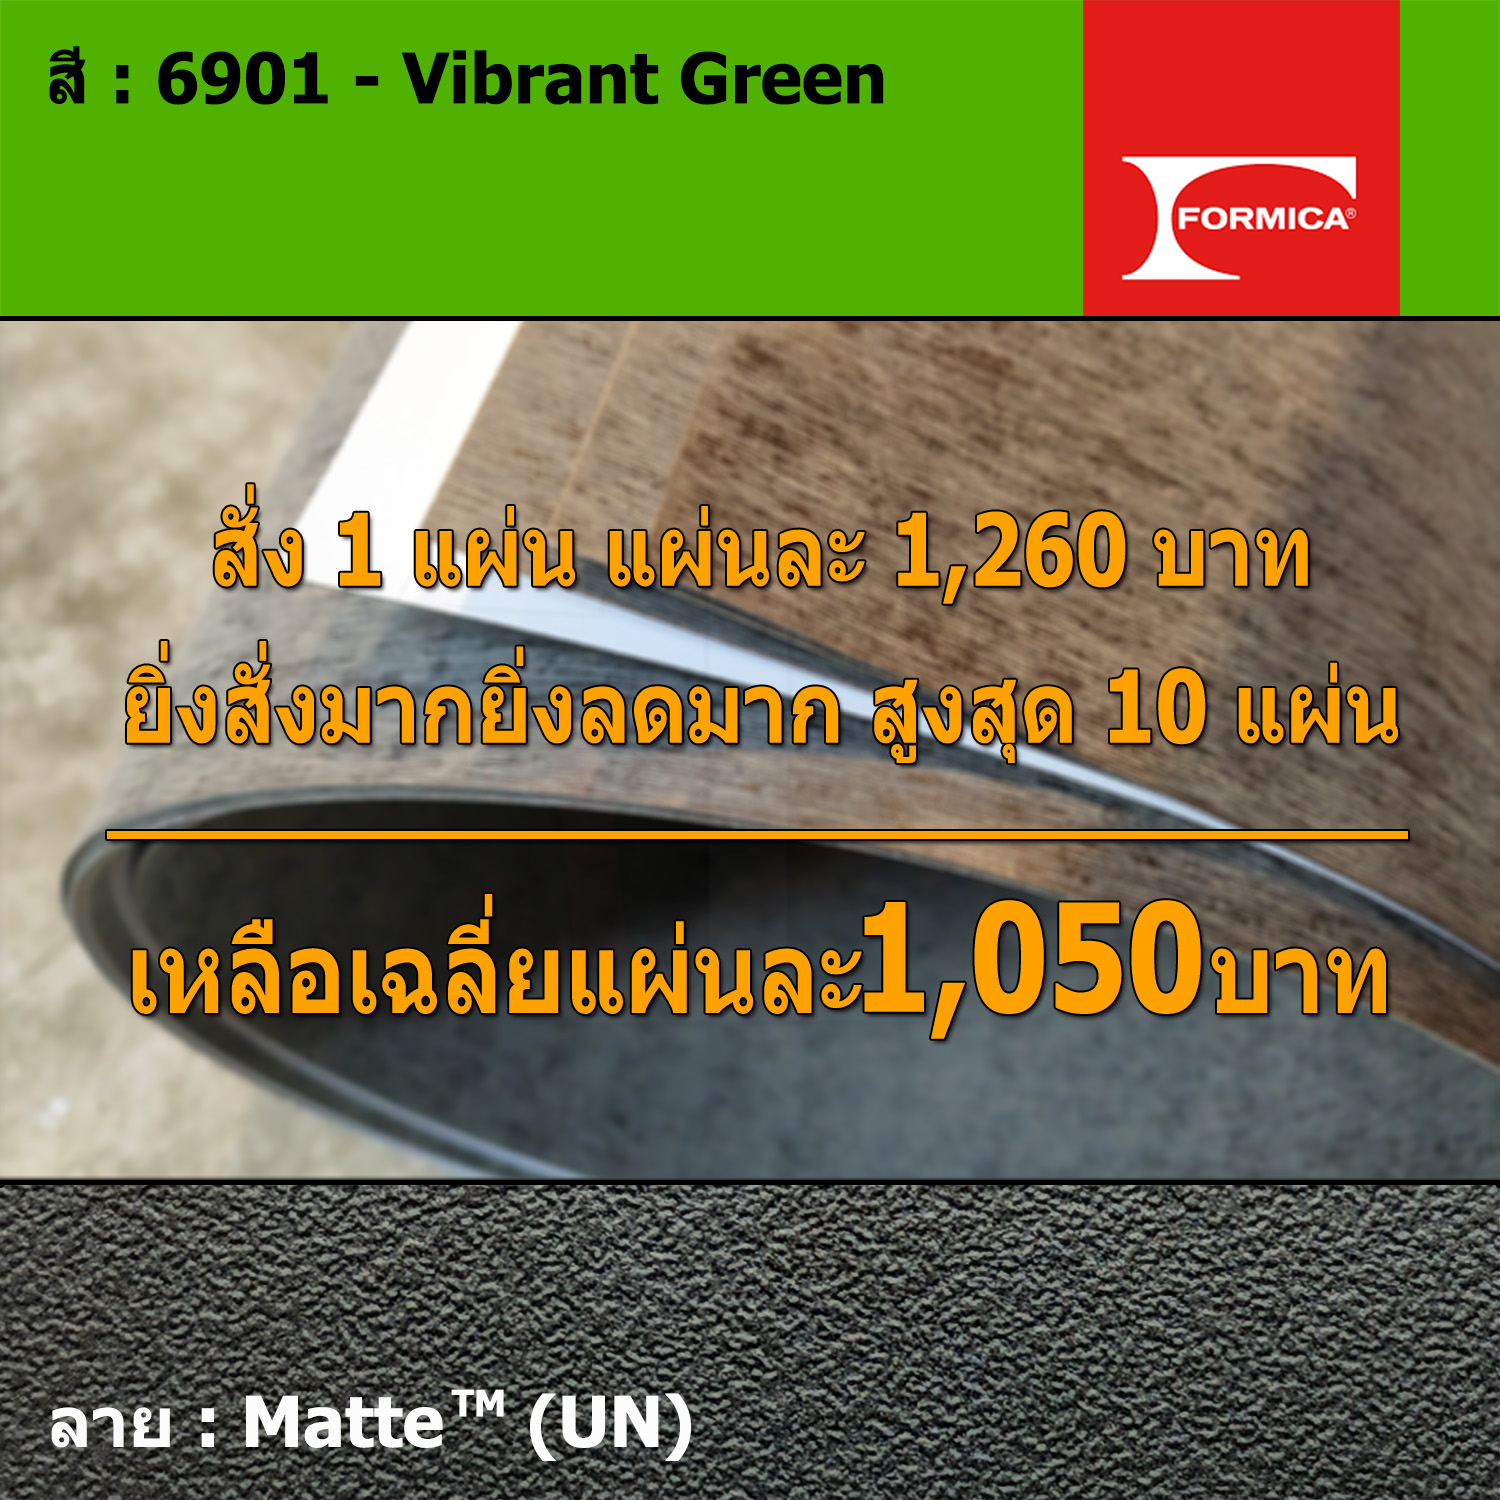 แผ่นโฟเมก้า แผ่นลามิเนต ยี่ห้อ Formica สีเขียว รหัส 6901 Vibrant Green พื้นผิวลาย Matte (UN) ขนาด 1220 x 2440 มม. หนา 0.80 มม. ใช้สำหรับงานตกแต่งภายใน งานปิดผิวเฟอร์นิเจอร์ ผนัง และอื่นๆ เพื่อเพิ่มความสวยงาม formica laminate 6901UN